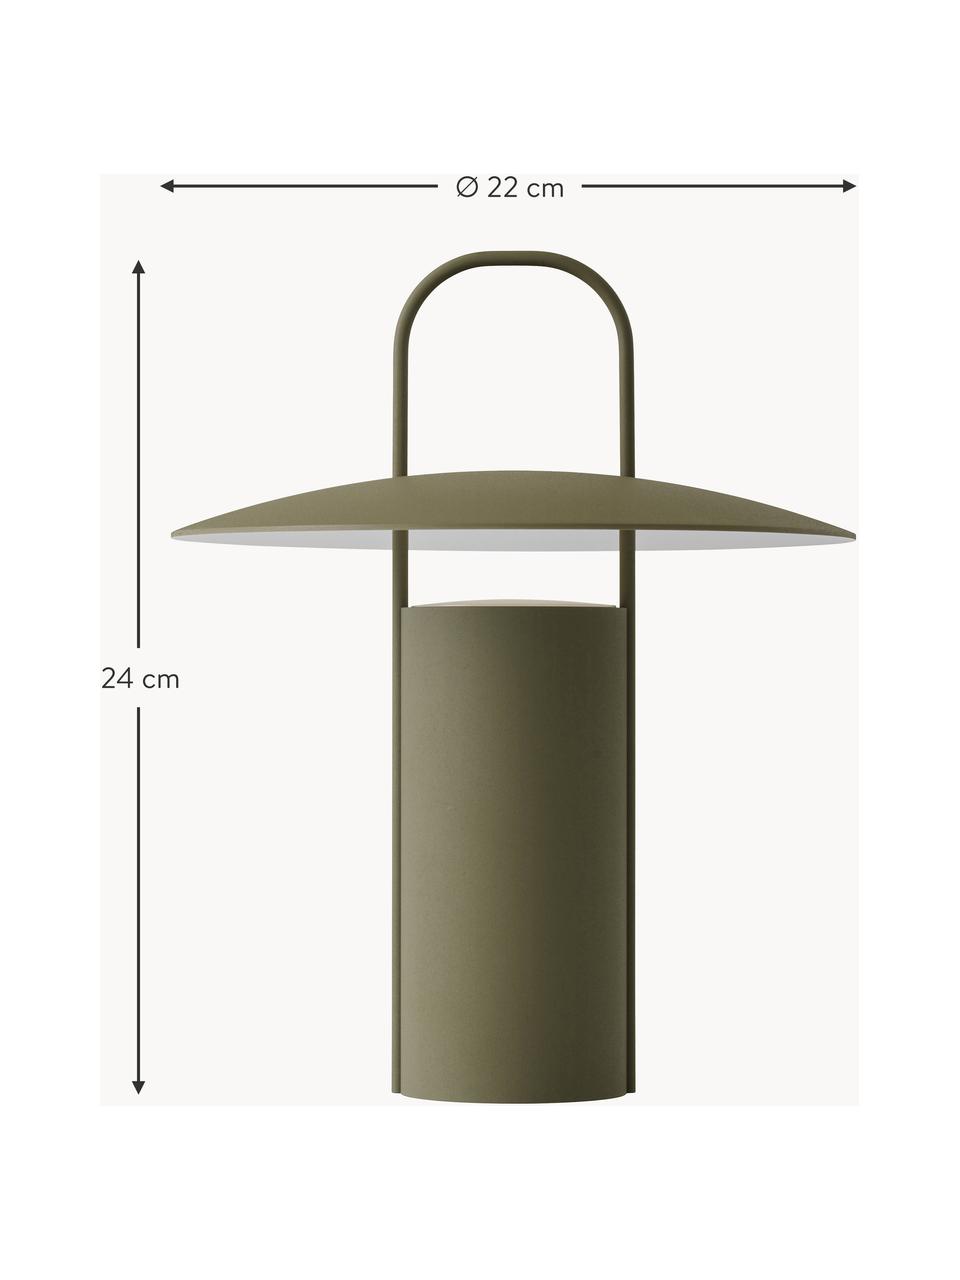 Lampa stołowa LED z funkcją przyciemniania Ray, Metal powlekany, Oliwkowy zielony, Ø 22 x W 24 cm